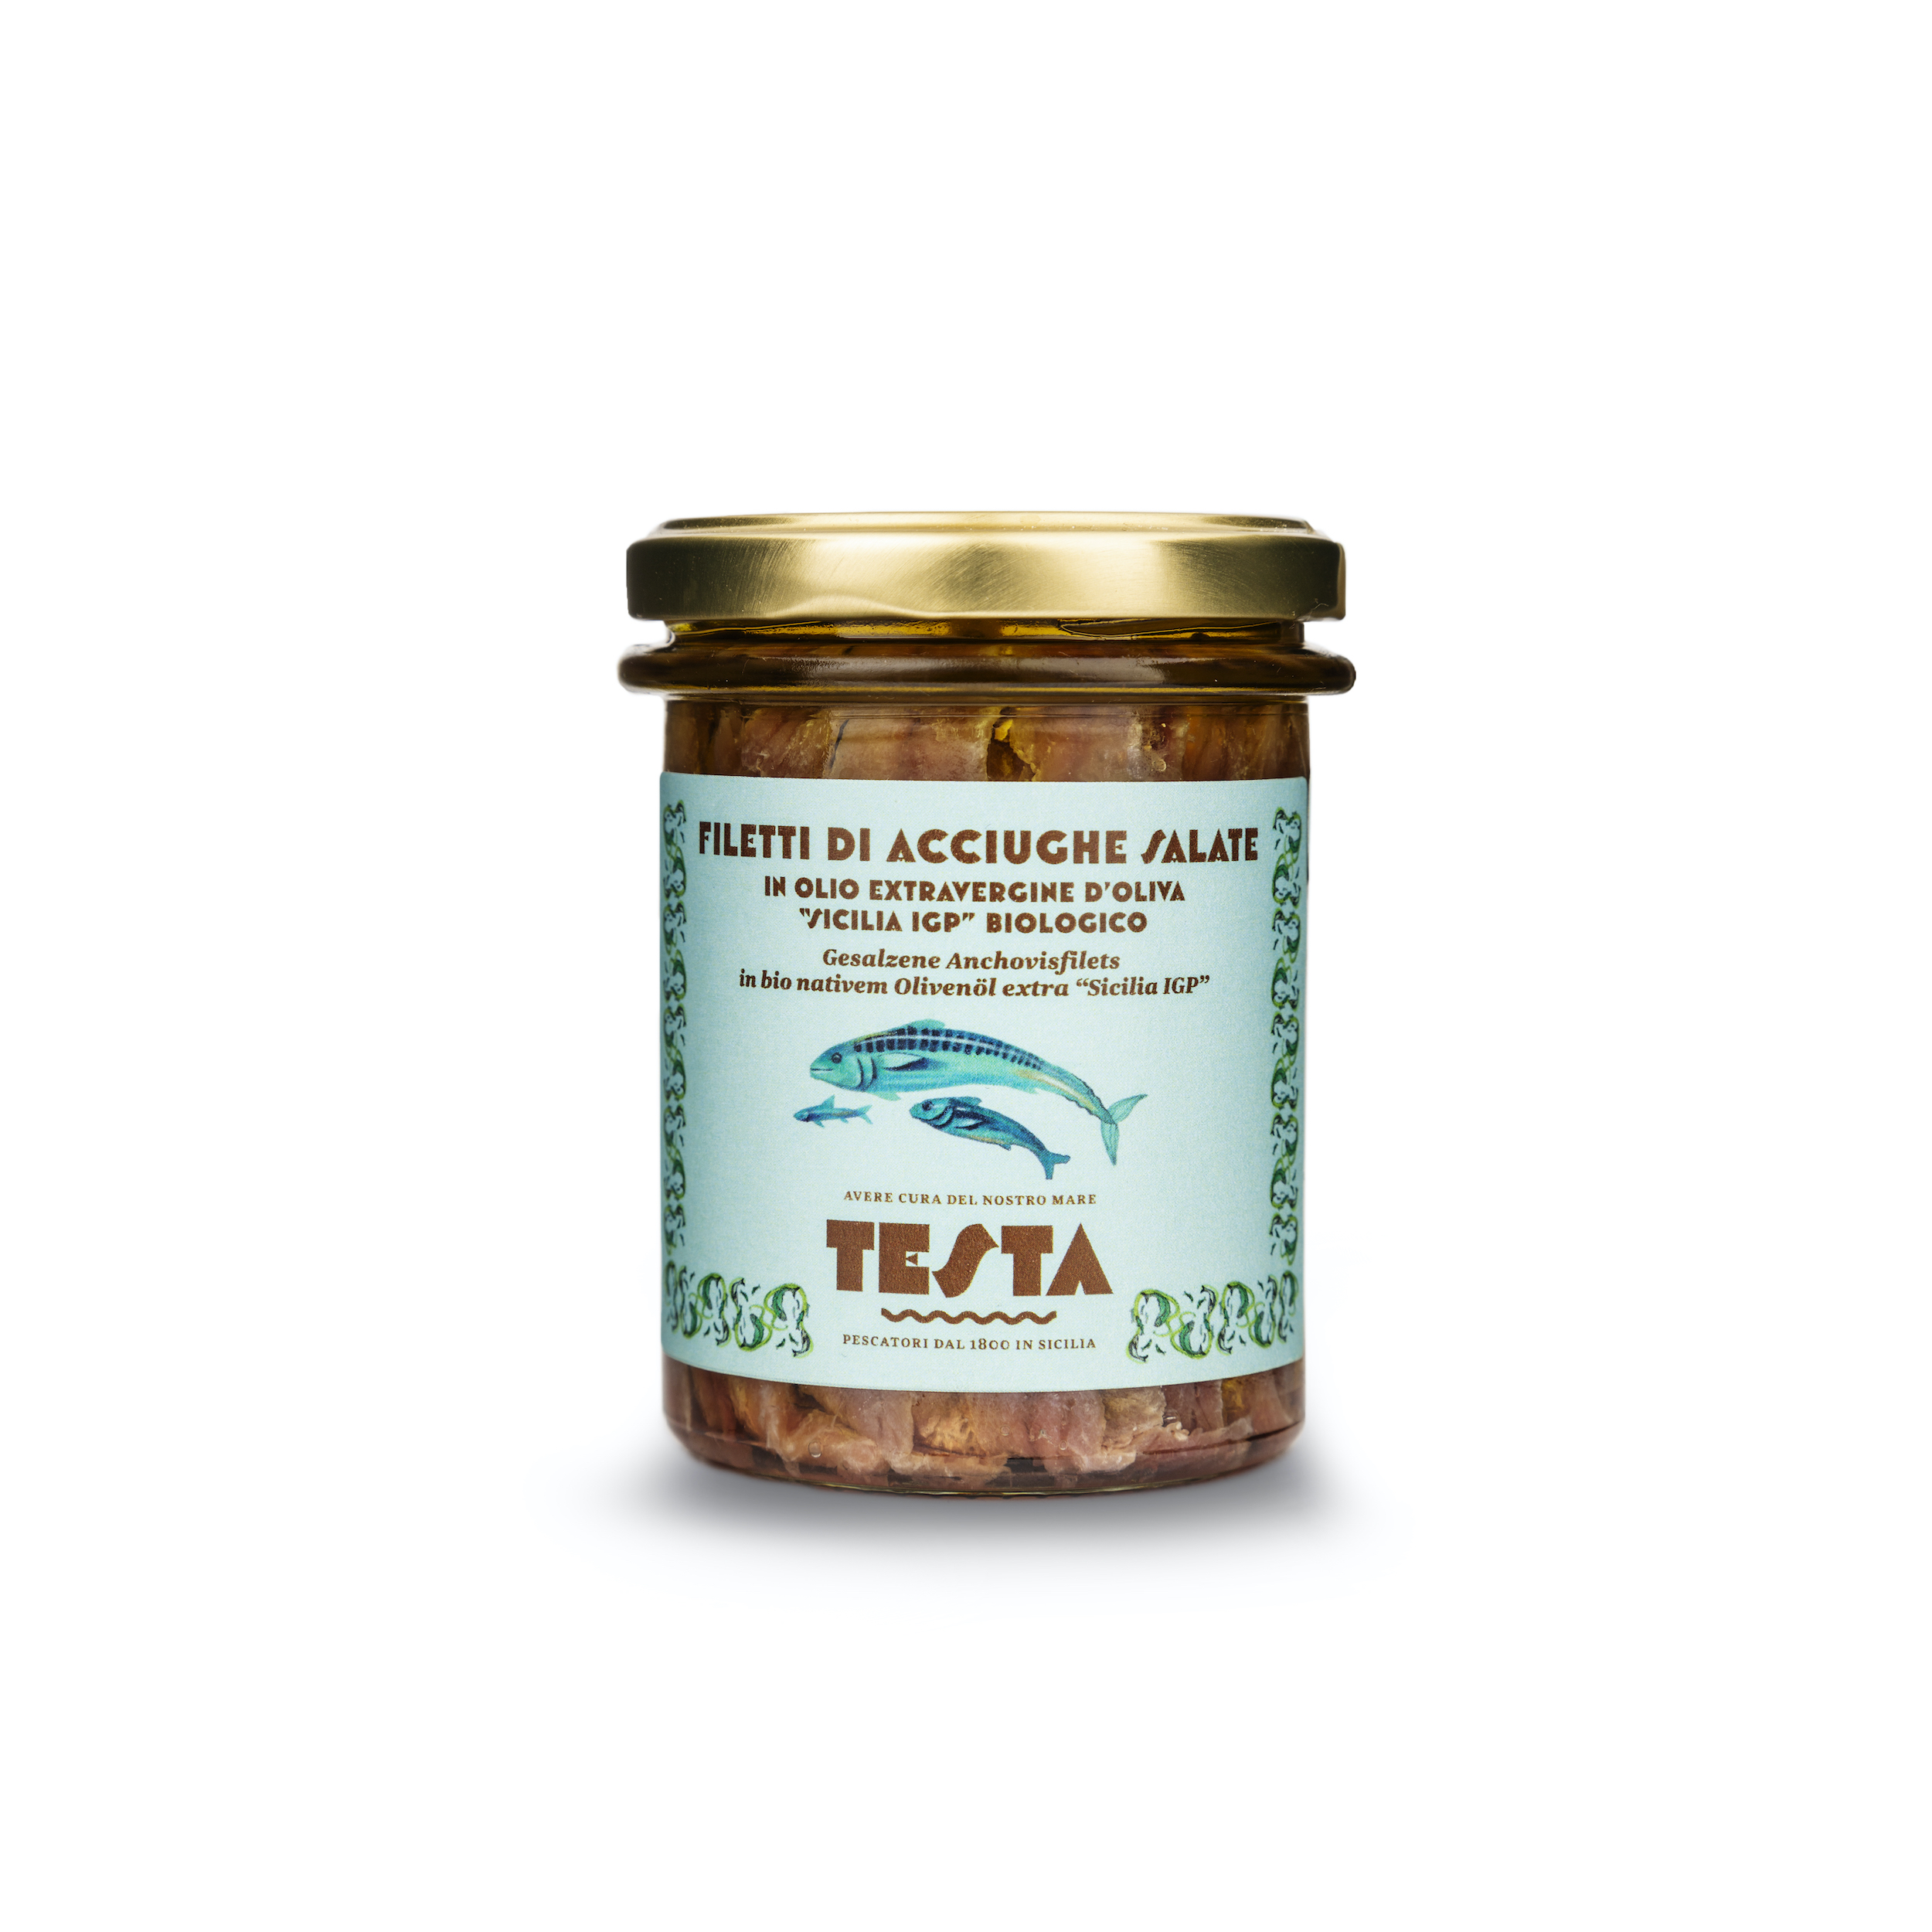 Gesalzene Sardellen in nativem Olivenöl extra g.g.A. - Testa Conserve -  Italienische Speisen und Weine - Exzellenzen und Raritäten